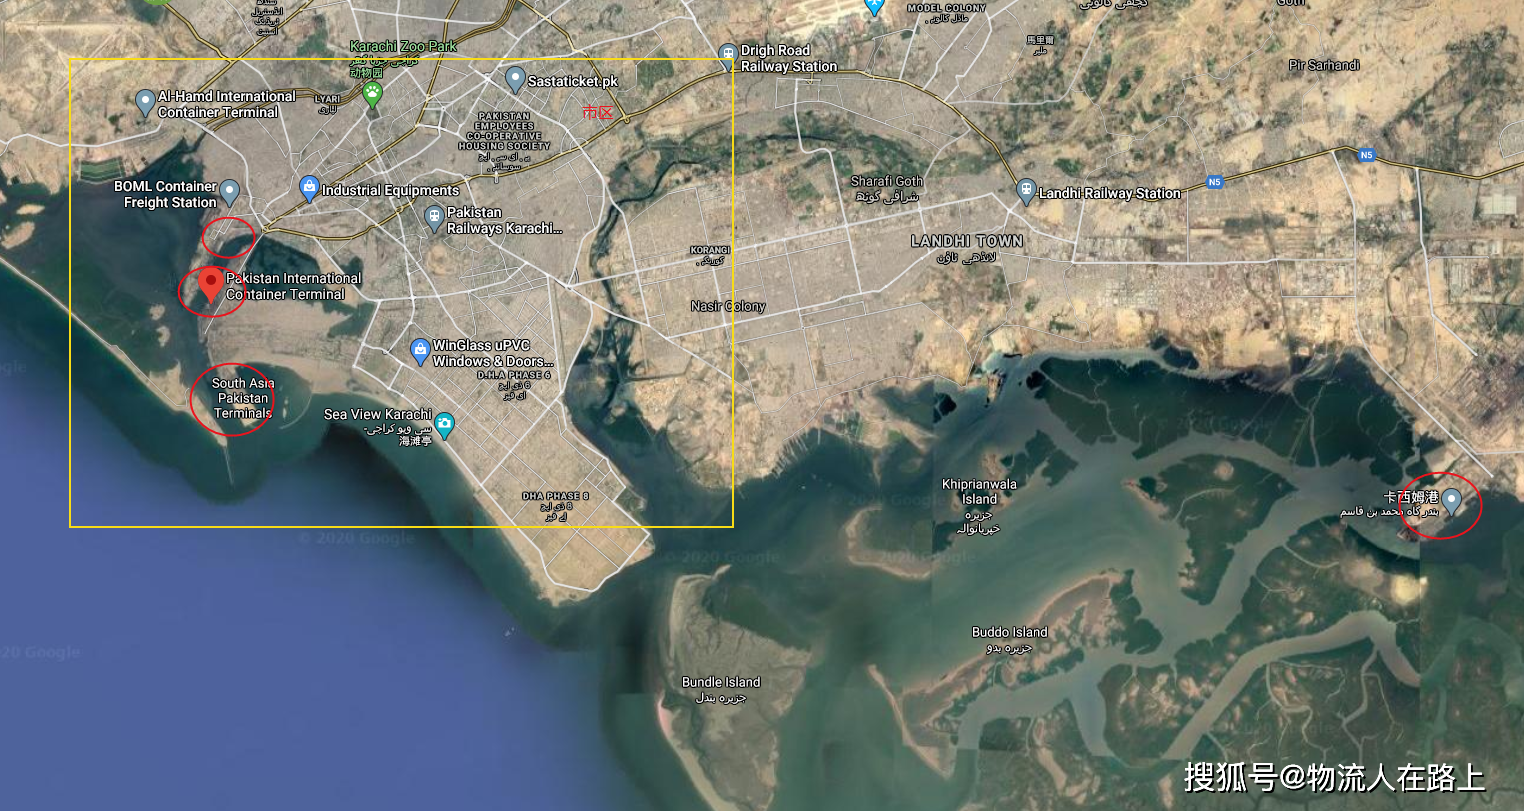 巴基斯坦海港总共有3个港口:卡拉奇港(karachi port),卡西姆港(port